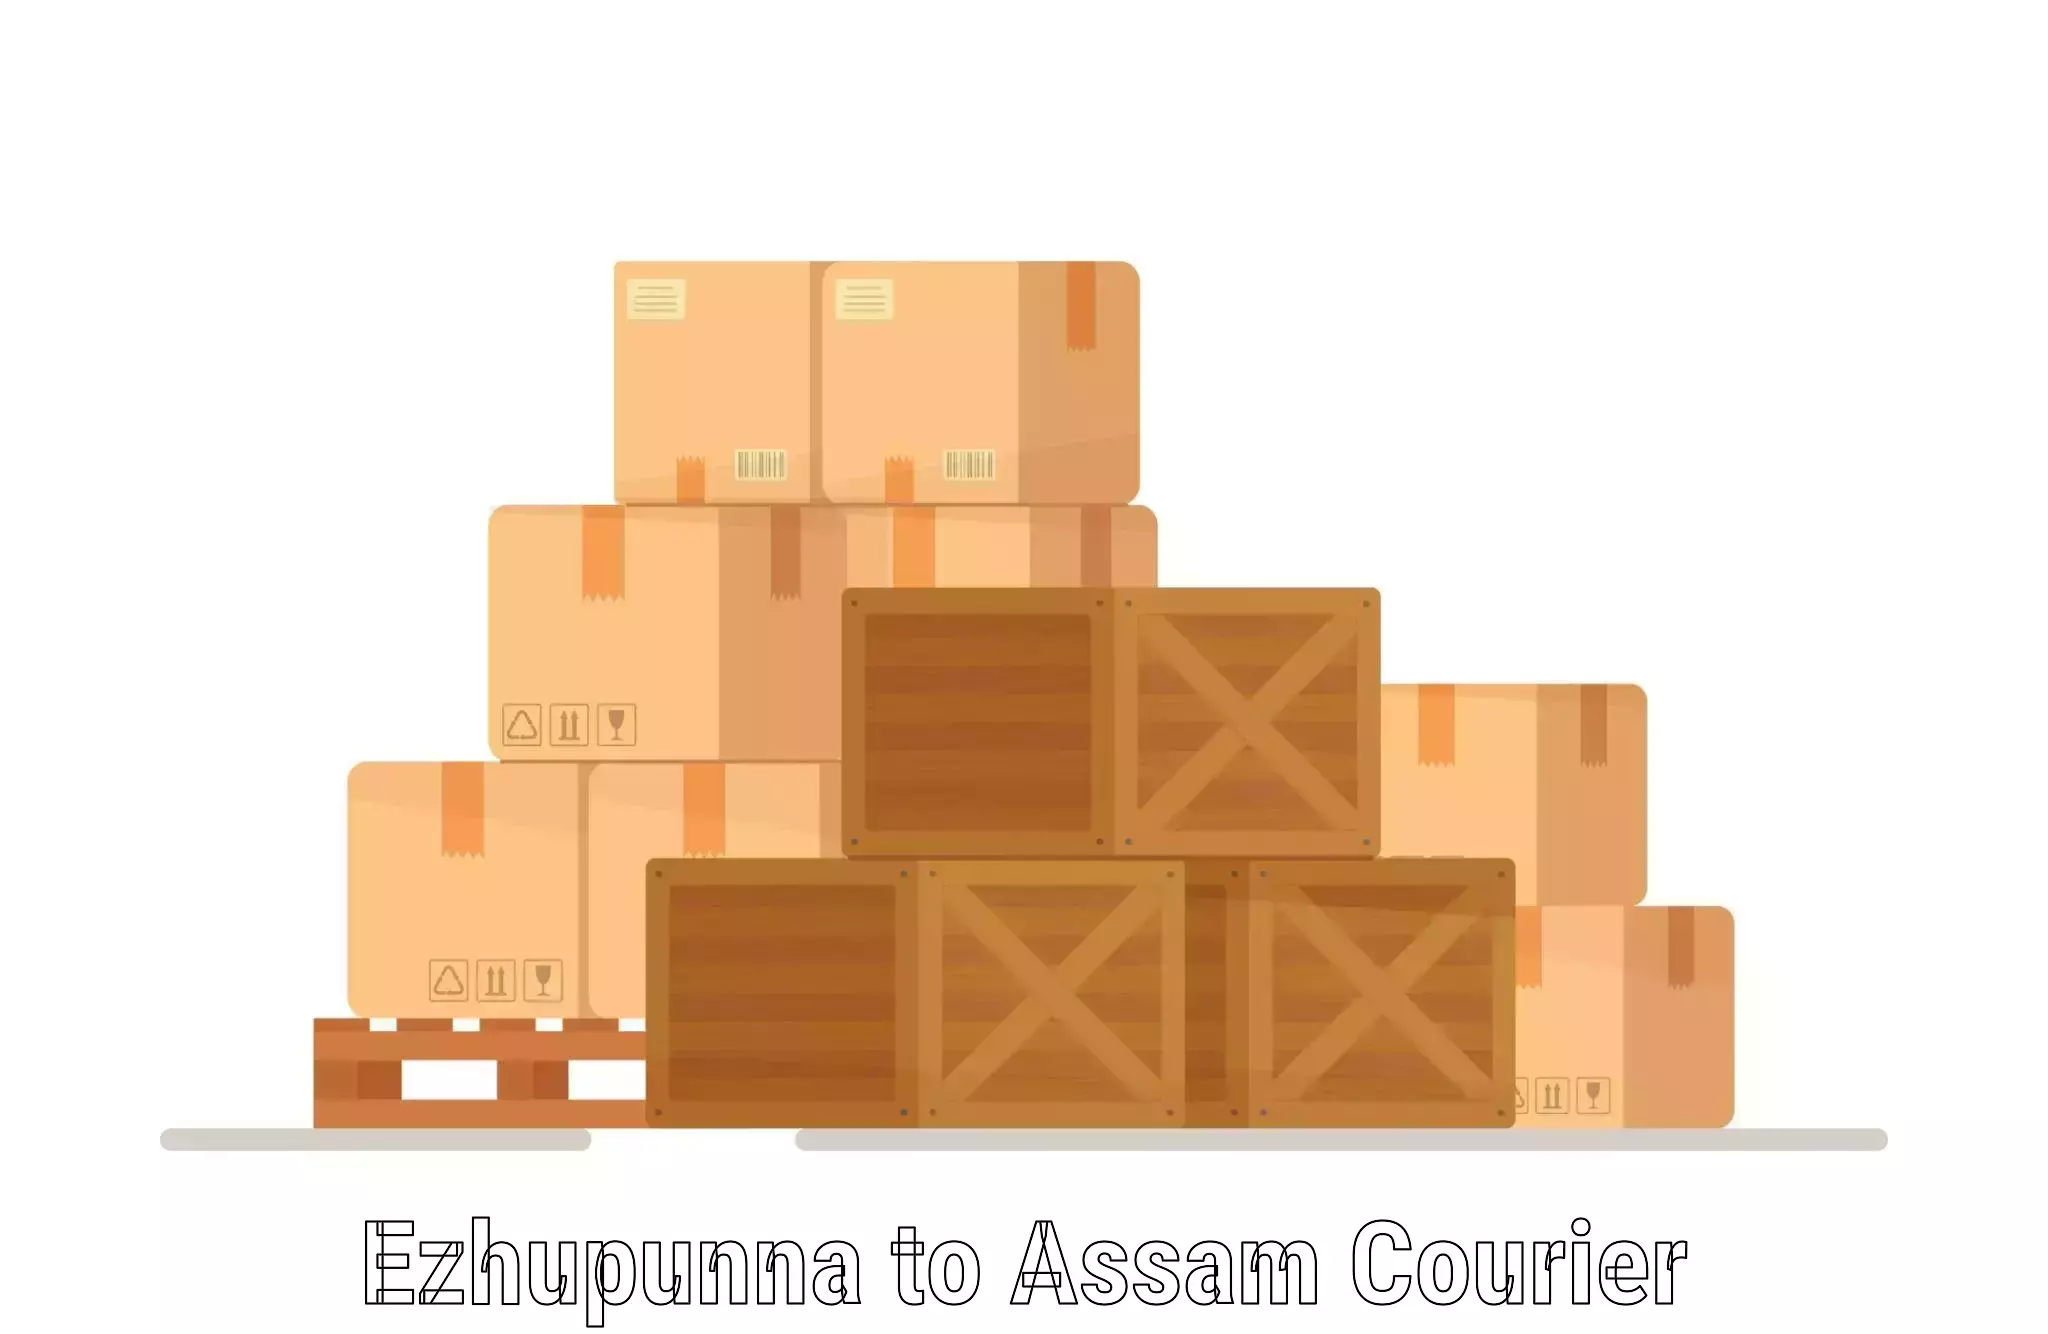 Easy access courier services Ezhupunna to Borholla